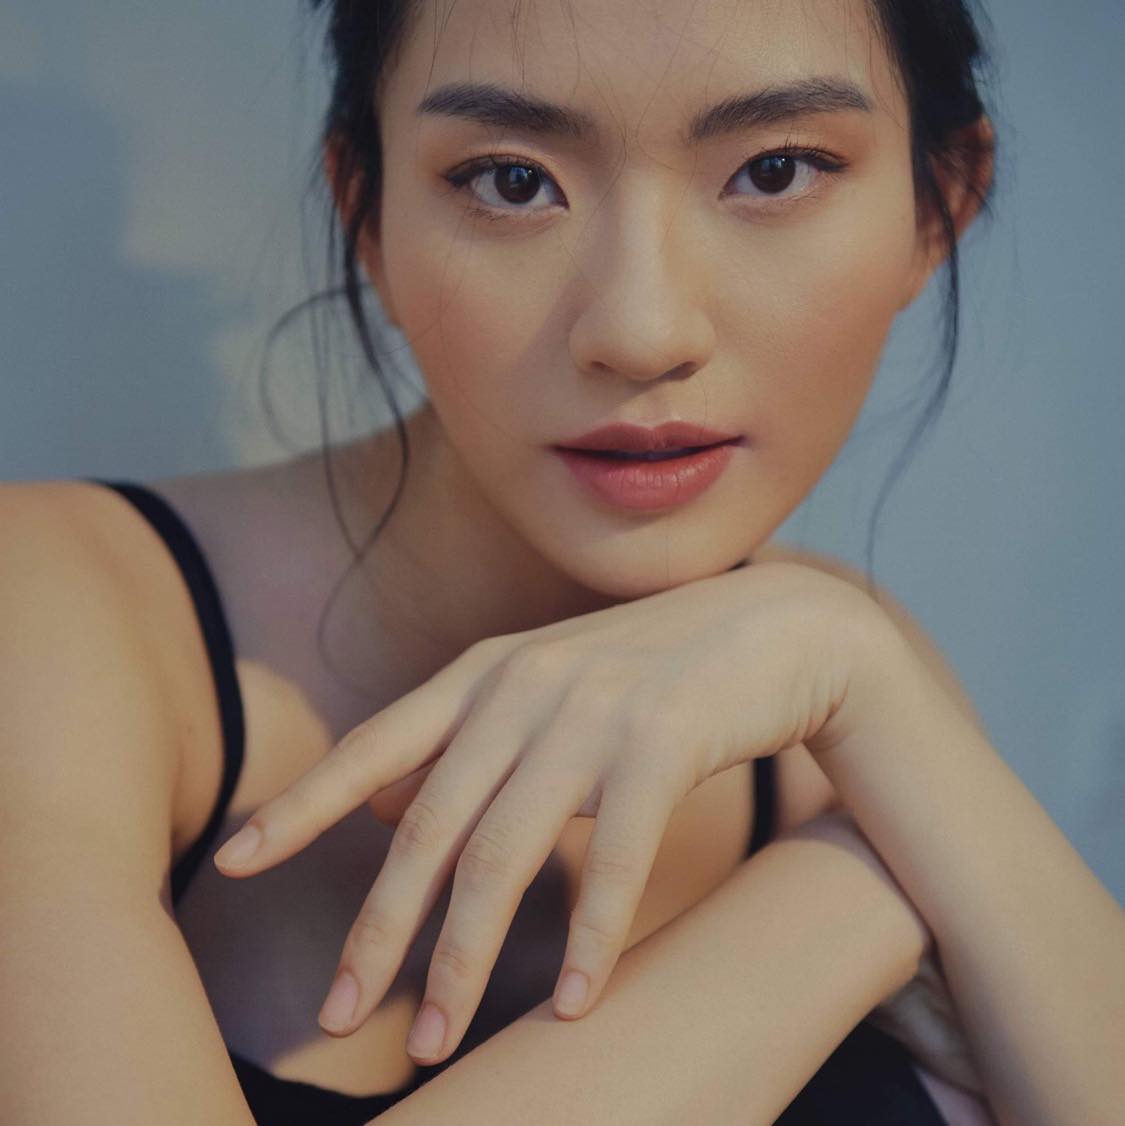 Các thí sinh tham gia cuộc thi ảnh online của Hoa hậu Hoàn vũ Việt Nam 2021 nhận được nhiều quan tâm.